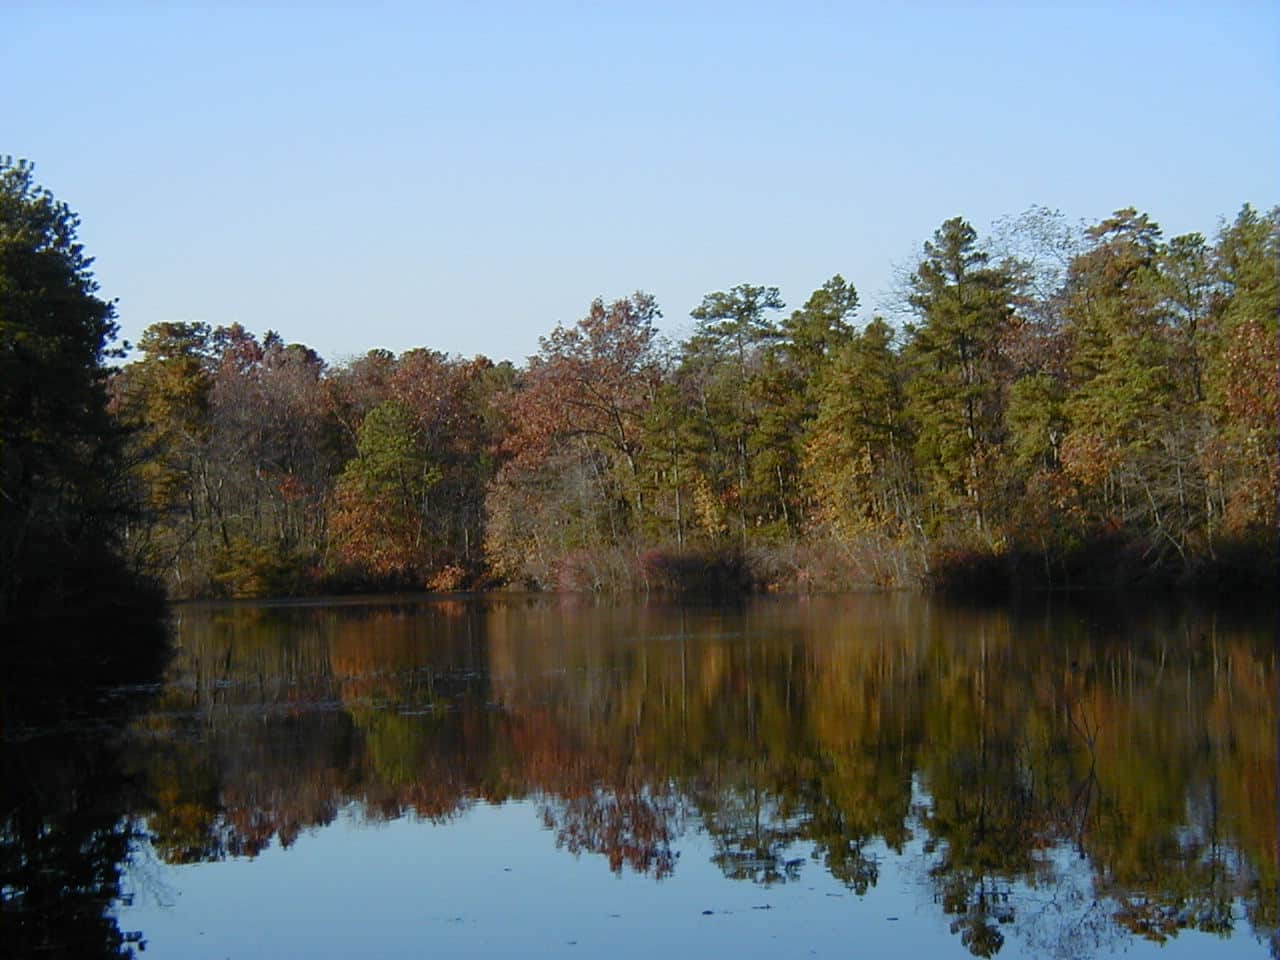 The Lake at Camp Ockanickon